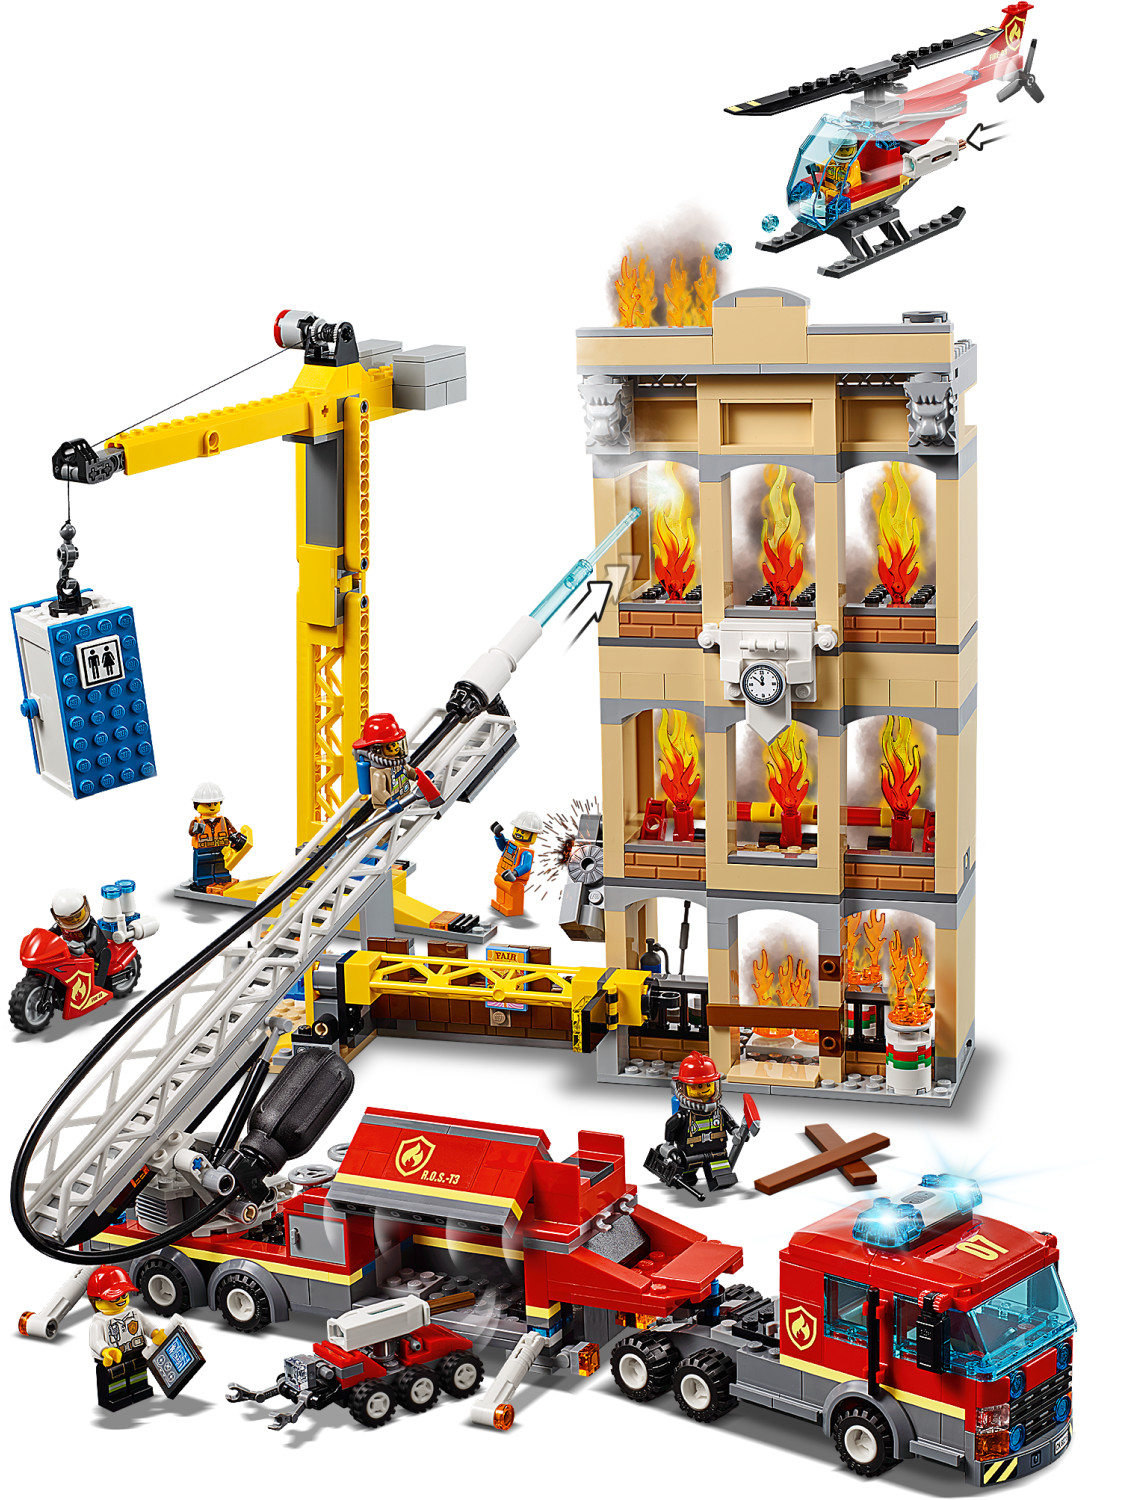 LEGO City - Missione antincendio in città (60216) a € 124,90 (oggi)